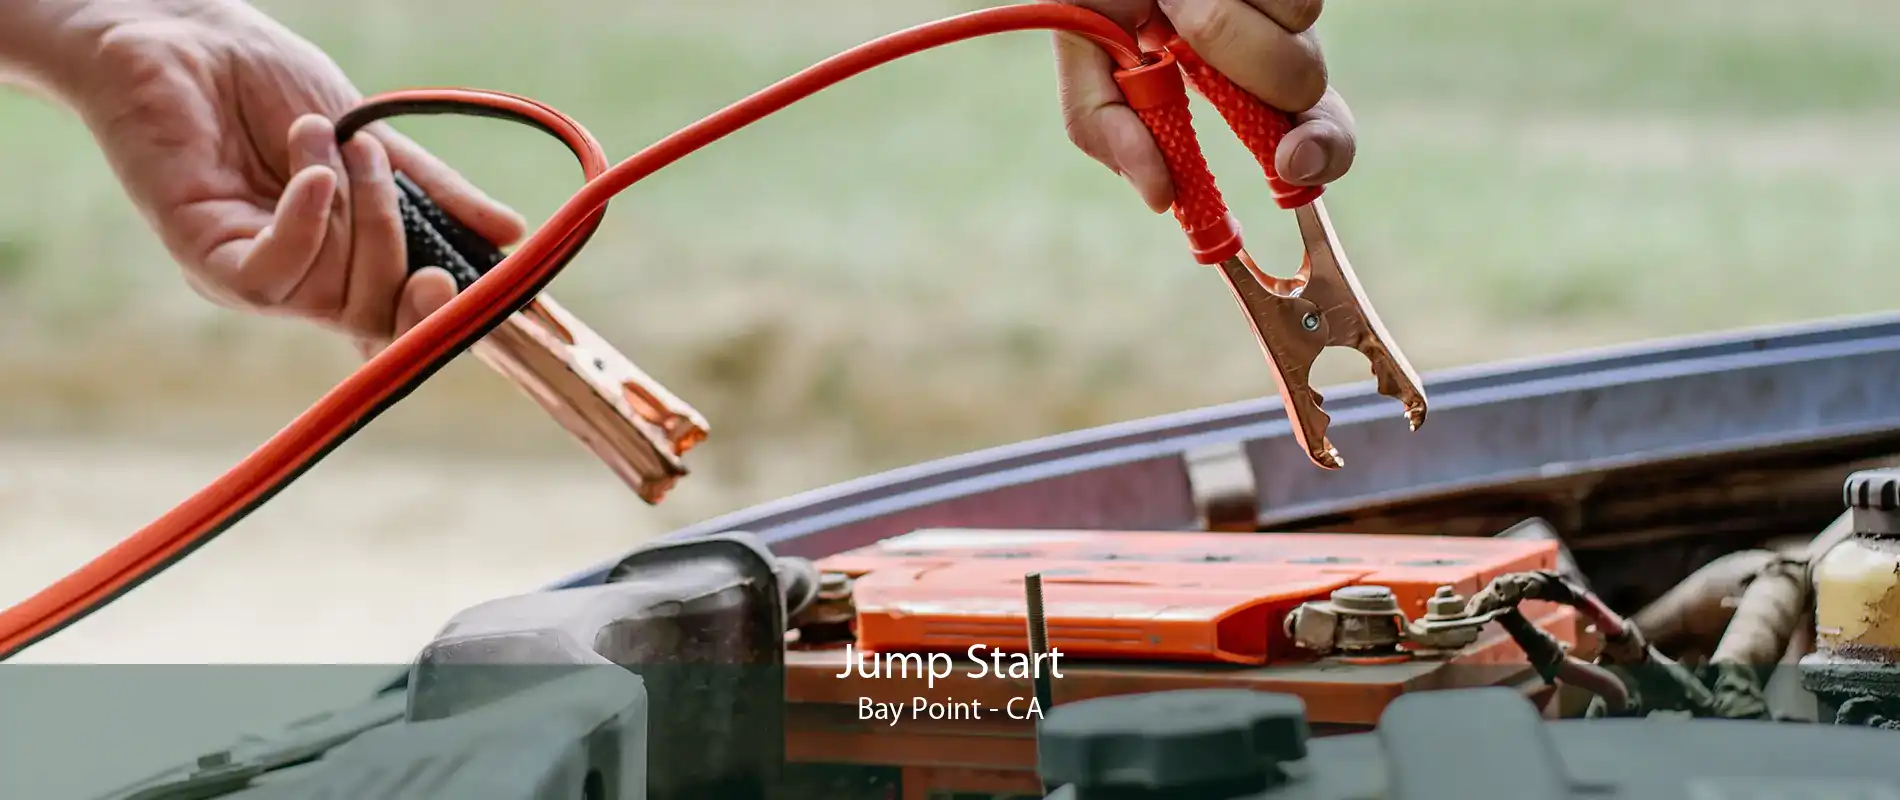 Jump Start Bay Point - CA